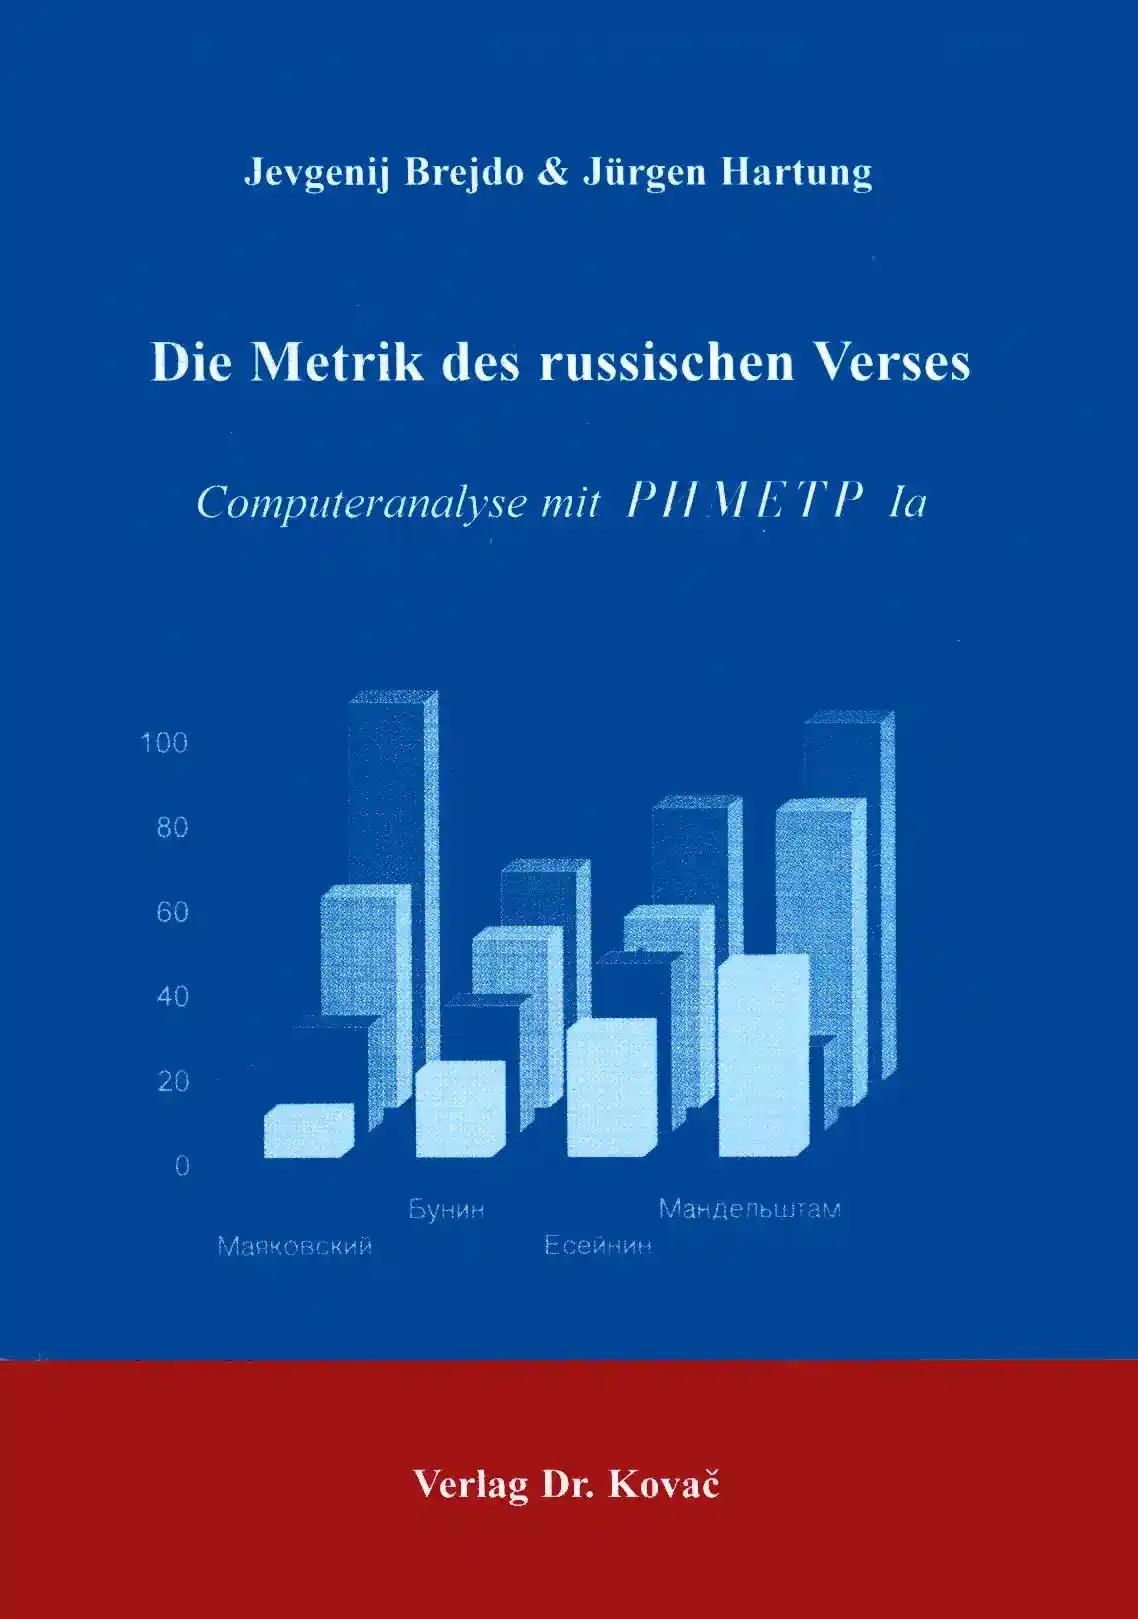 Die Metrik des russischen Verses, Computeranalyse mit PNMETP la - Jevgenij Brejdo, Jürgen Hartung